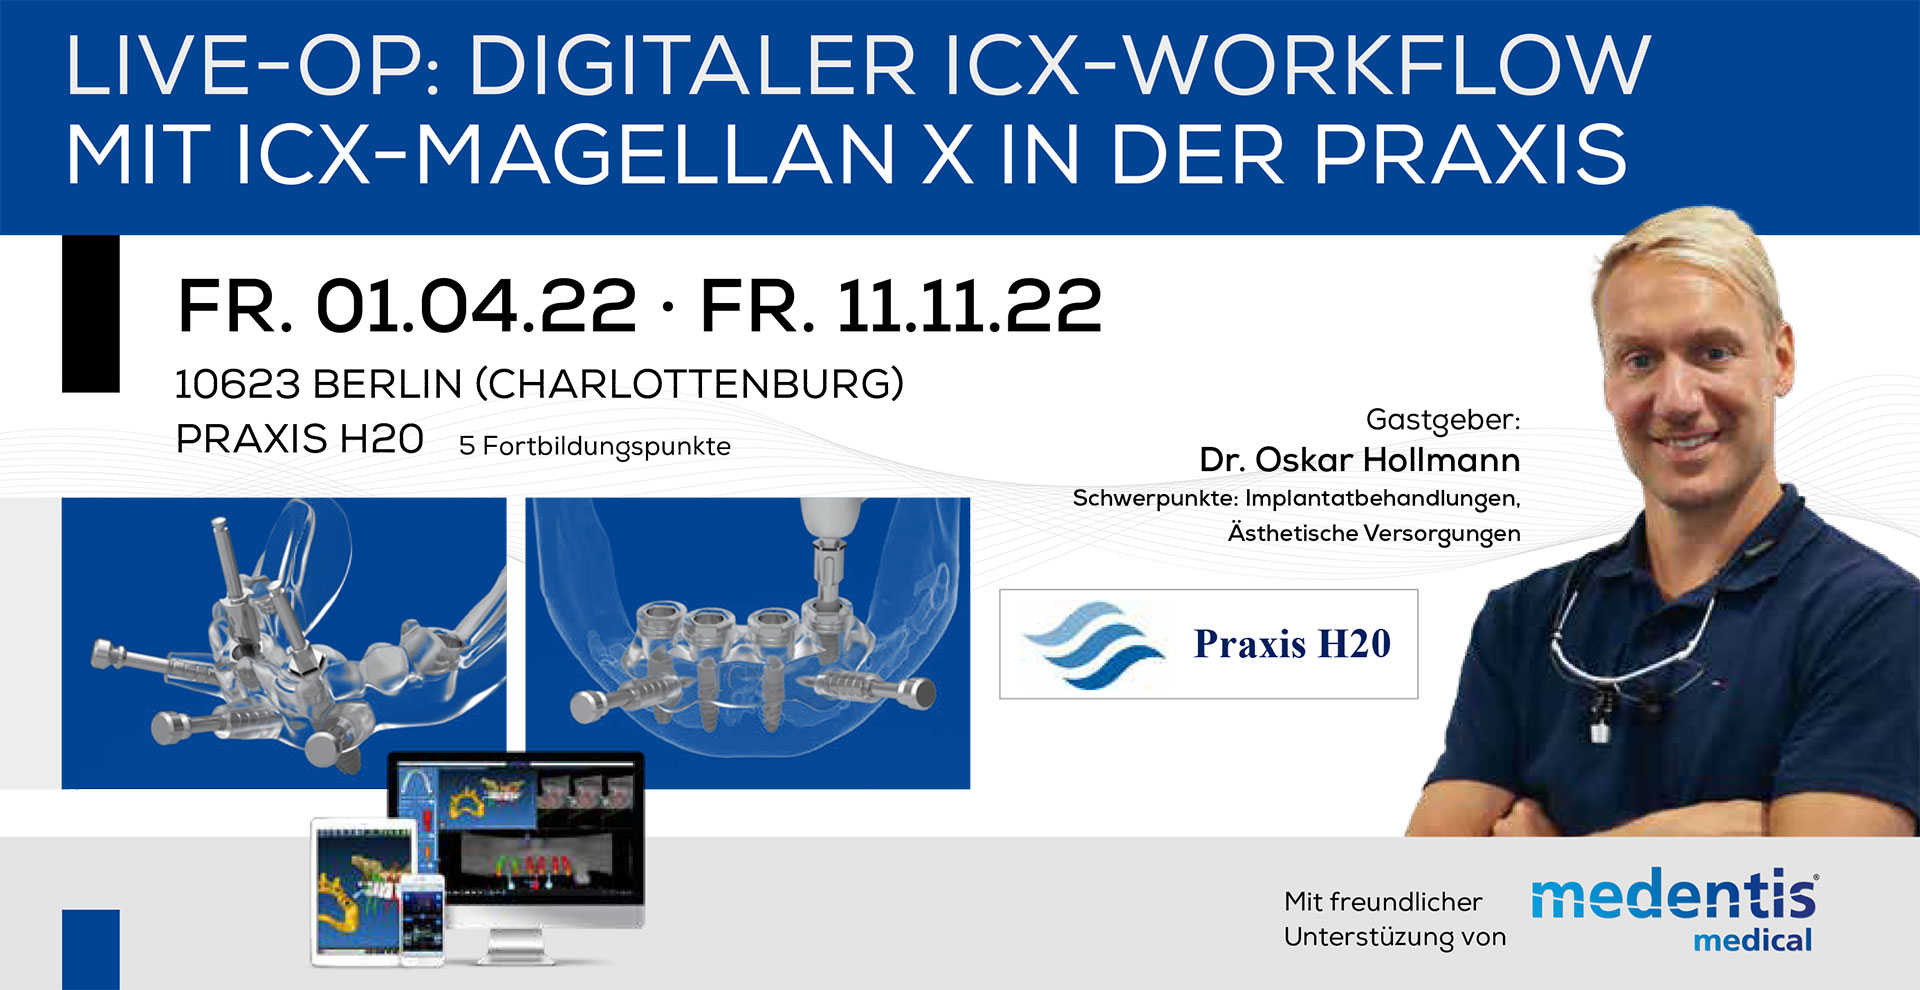 Live-OP: Digitaler ICX-Workflow mit ICX-MAGELLAN X in der Praxis